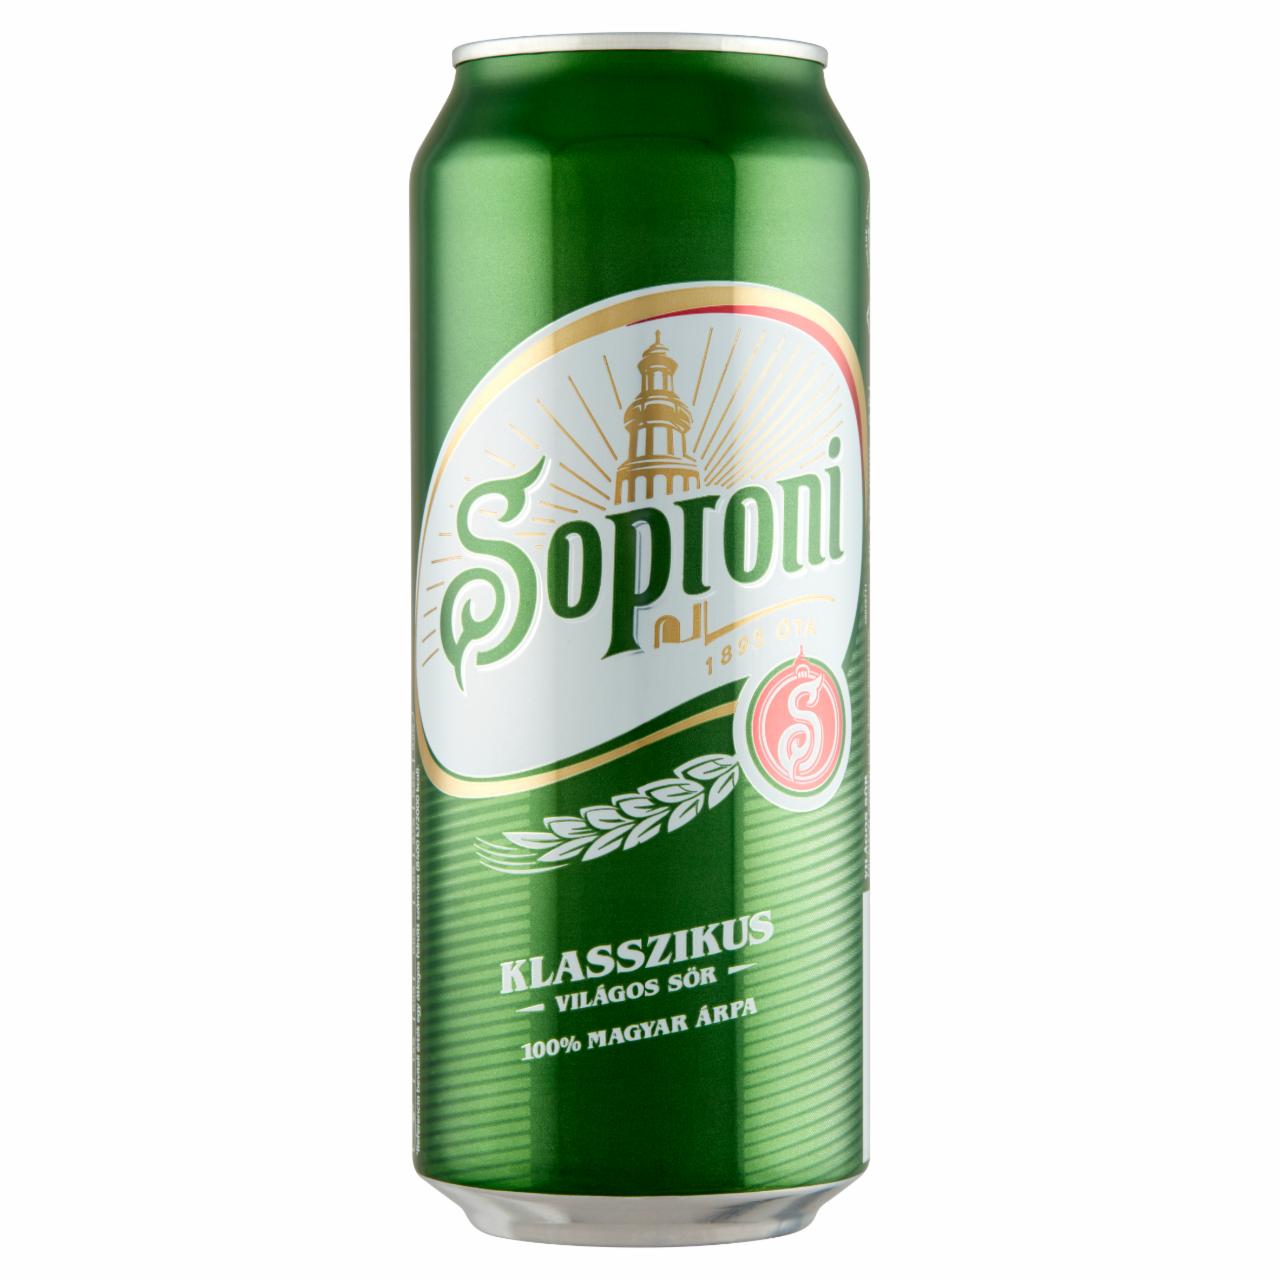 Fotografie - Soproni Klasszikus világos sör 4,5%